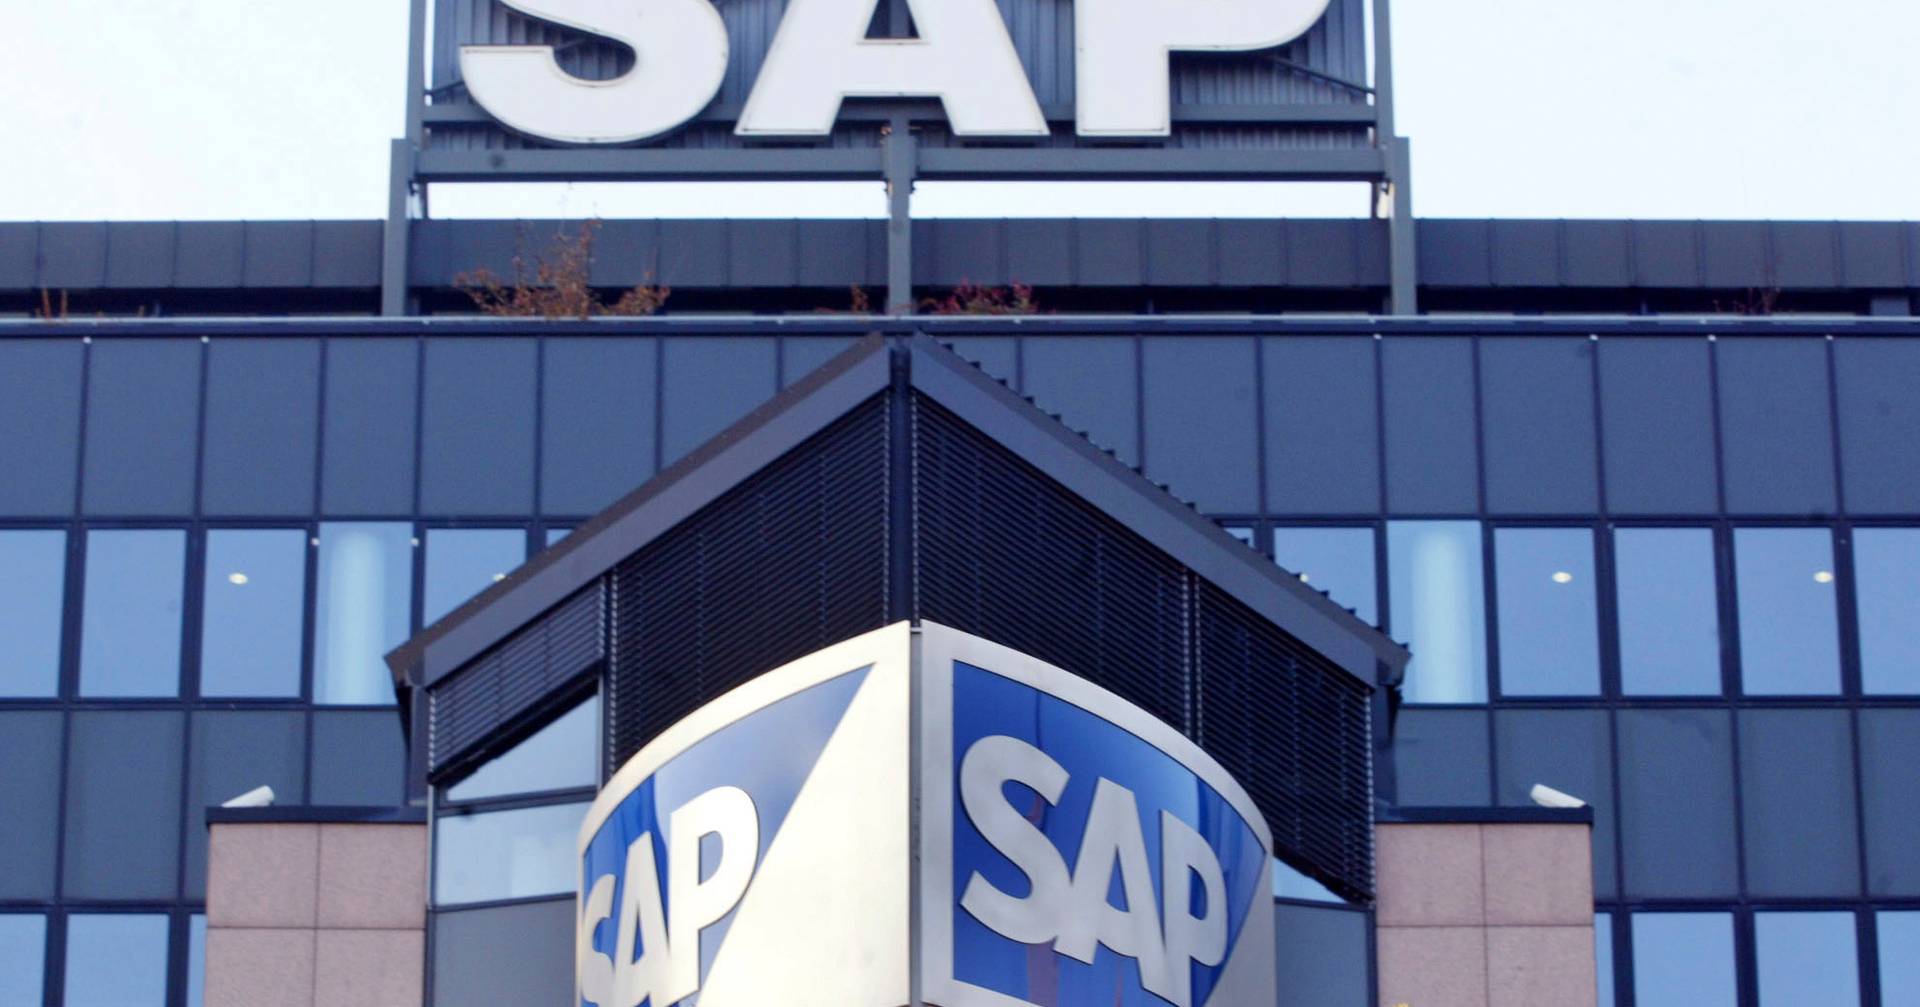 Deutsches Technologieunternehmen SAP entlässt 3.000 Mitarbeiter, nachdem die Gewinne um 50 % eingebrochen sind